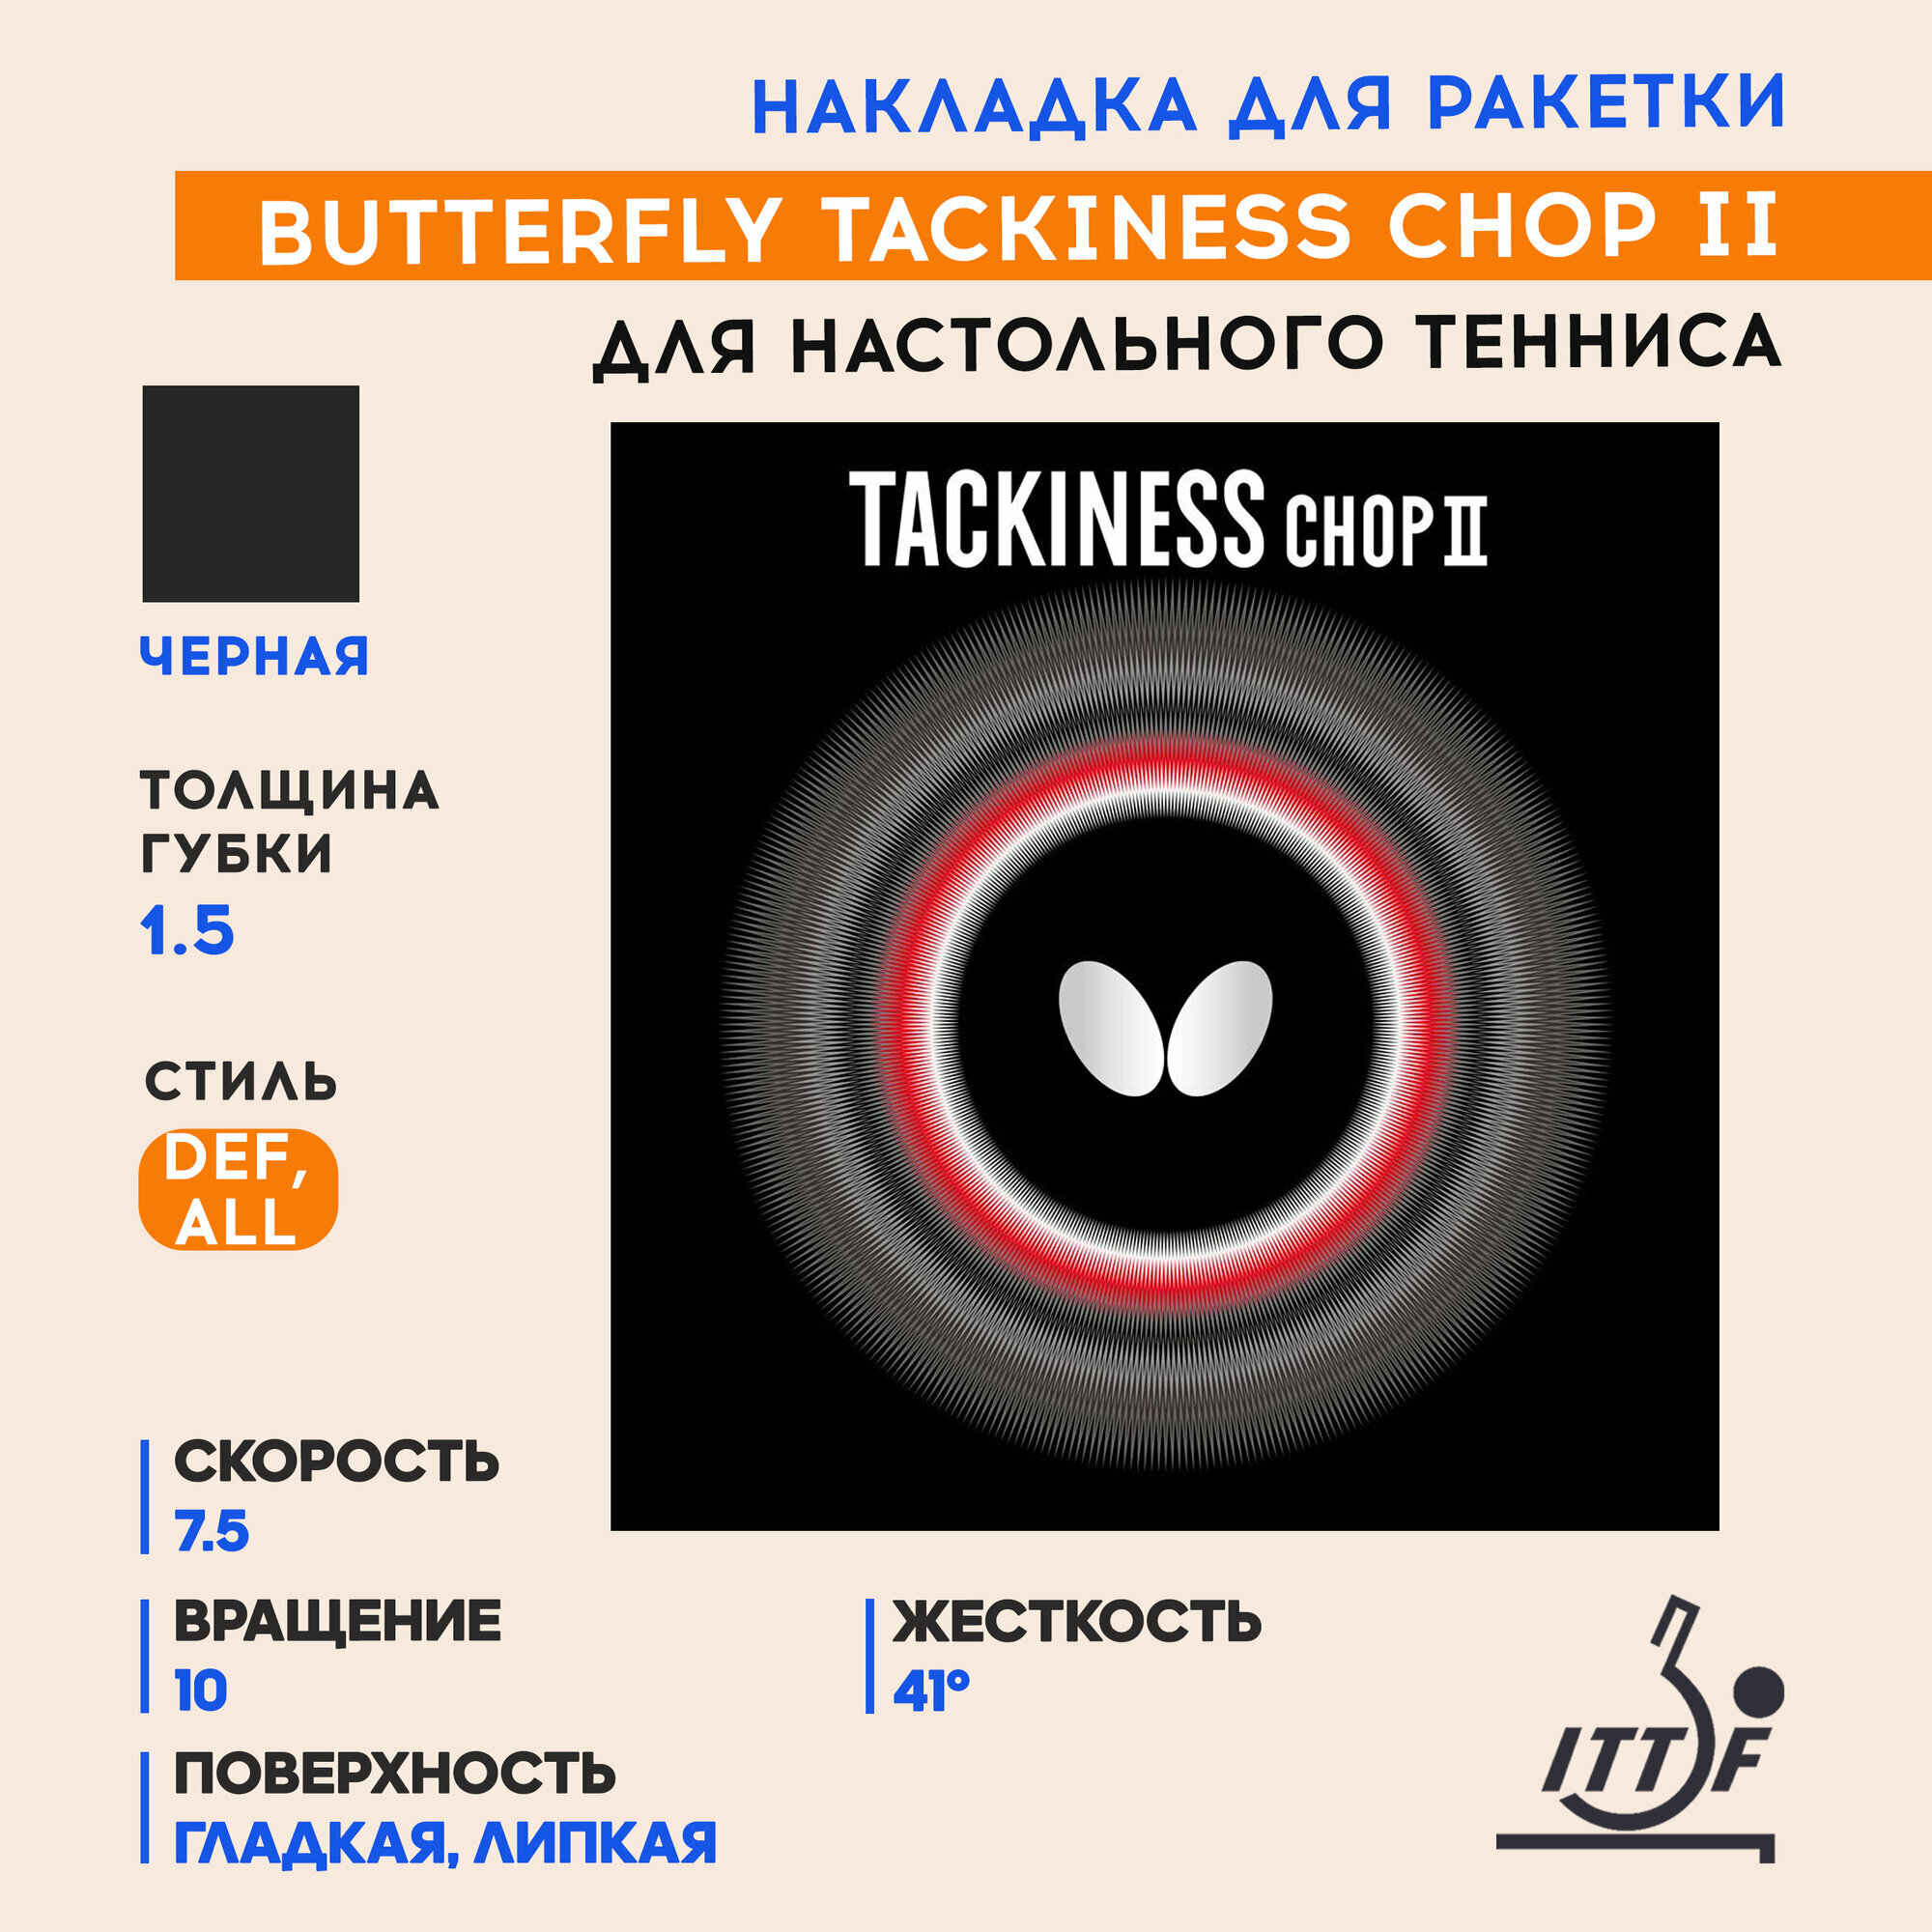 Накладка для теннисной ракетки Butterfly Tackiness Chop II (цвет черный, толщина 1.5)